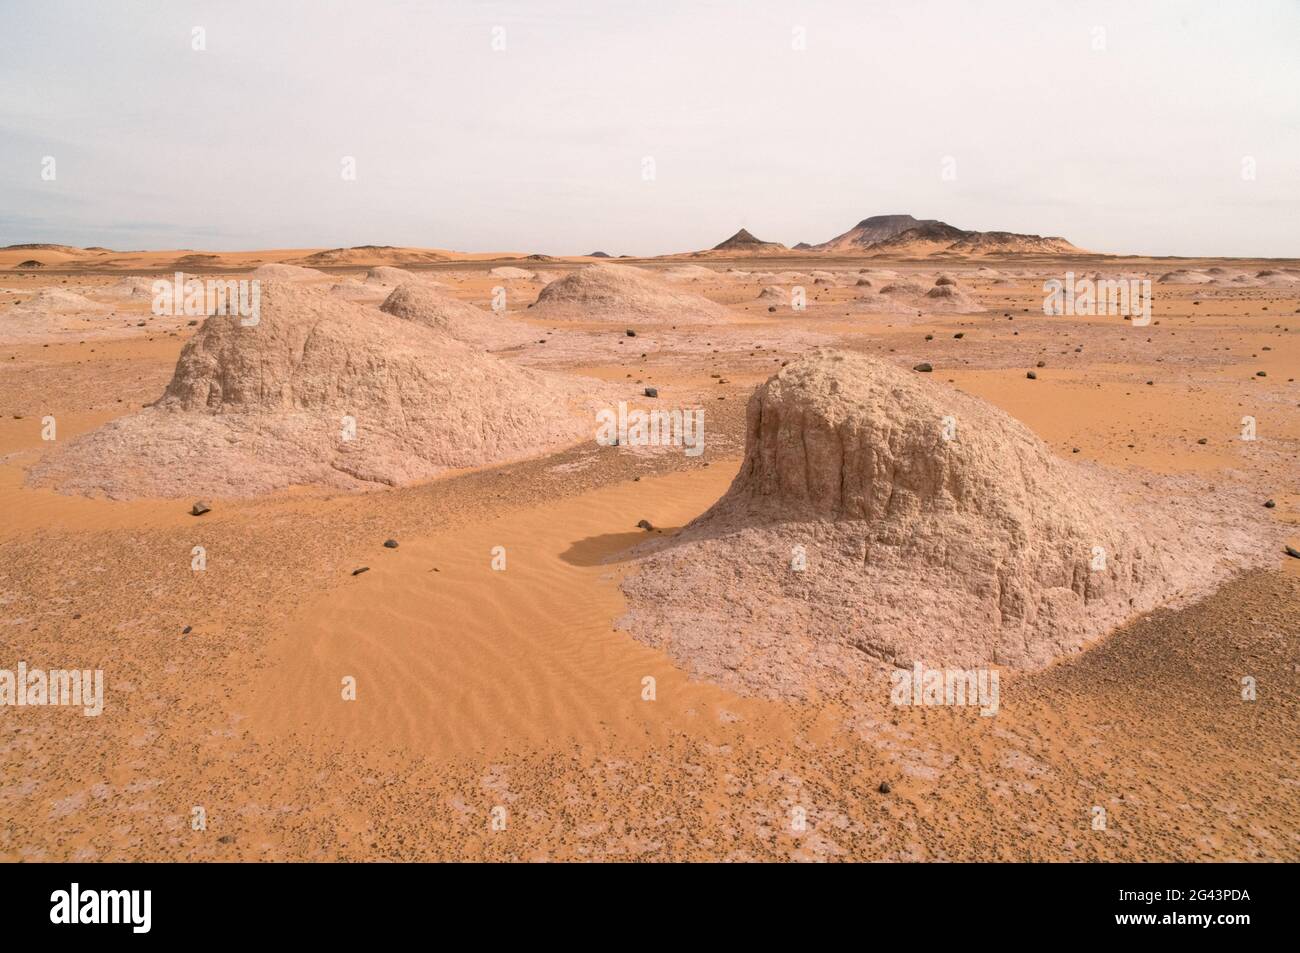 Montículos de yardang erosionados ubicados en la región del desierto occidental del Sáhara, en el suroeste de Egipto. Foto de stock